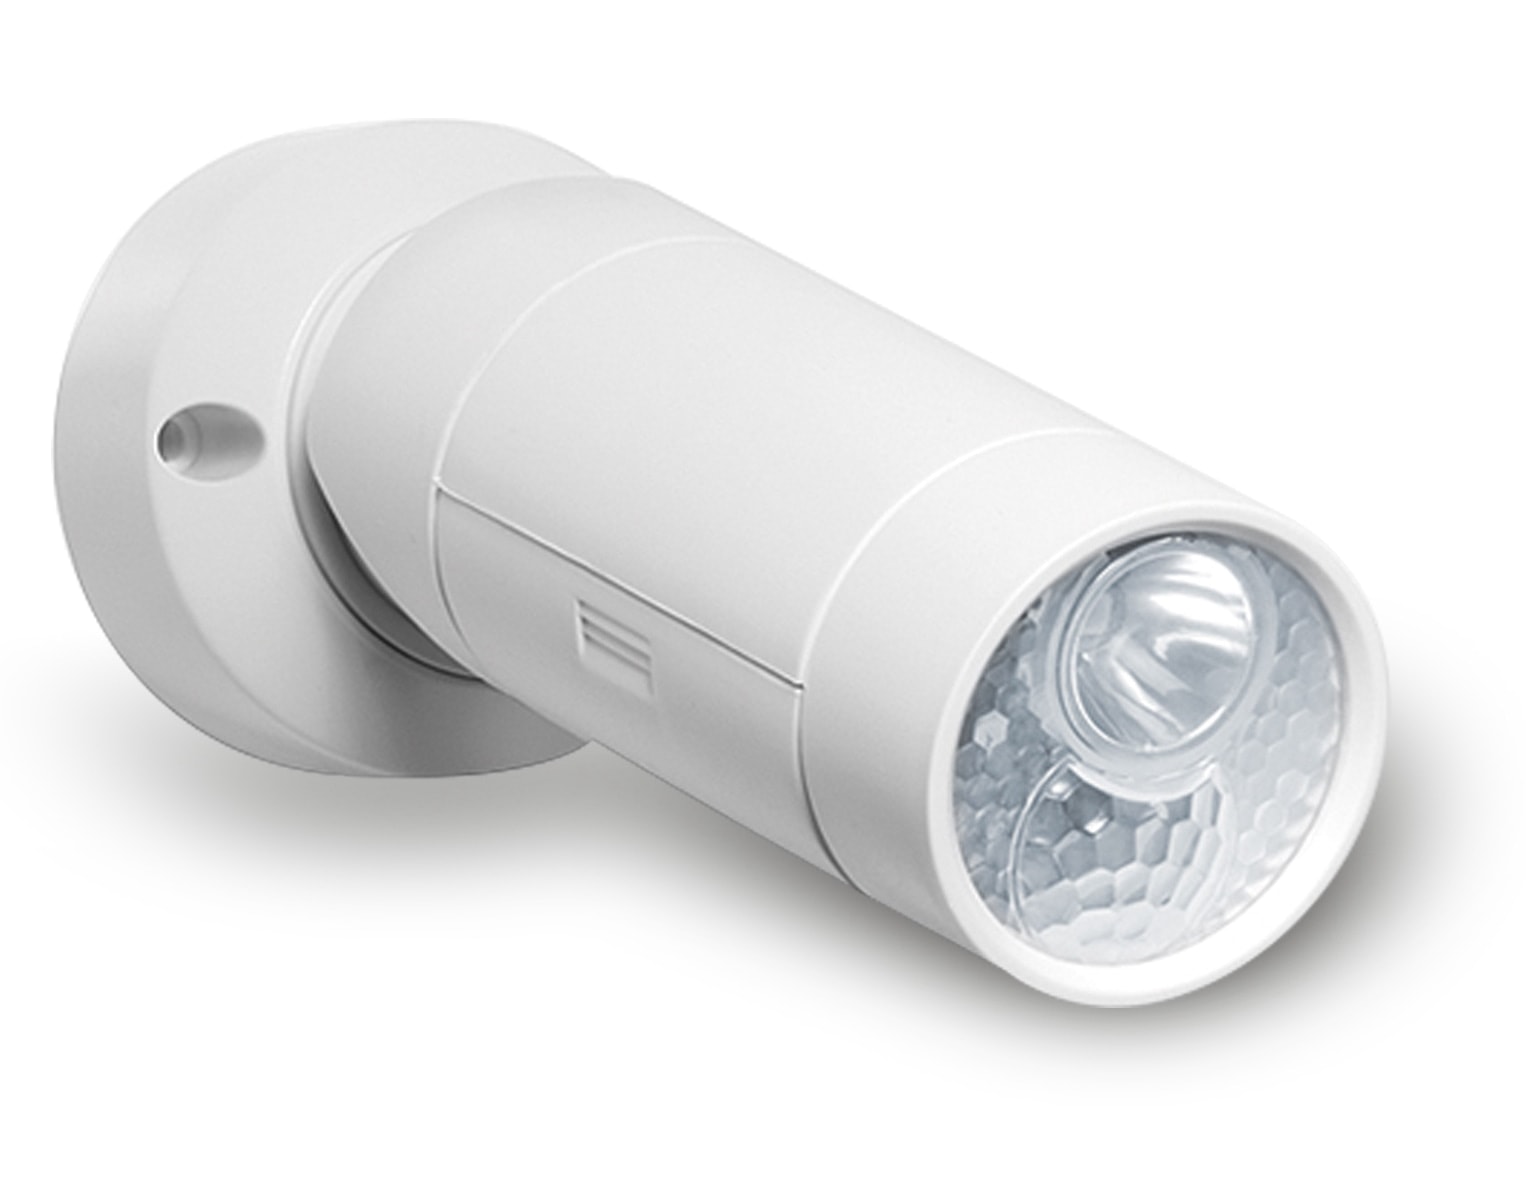 GEV LED Spot Licht 377 mit Bewegungsmelder Innen/Außen, batteriebetrieb